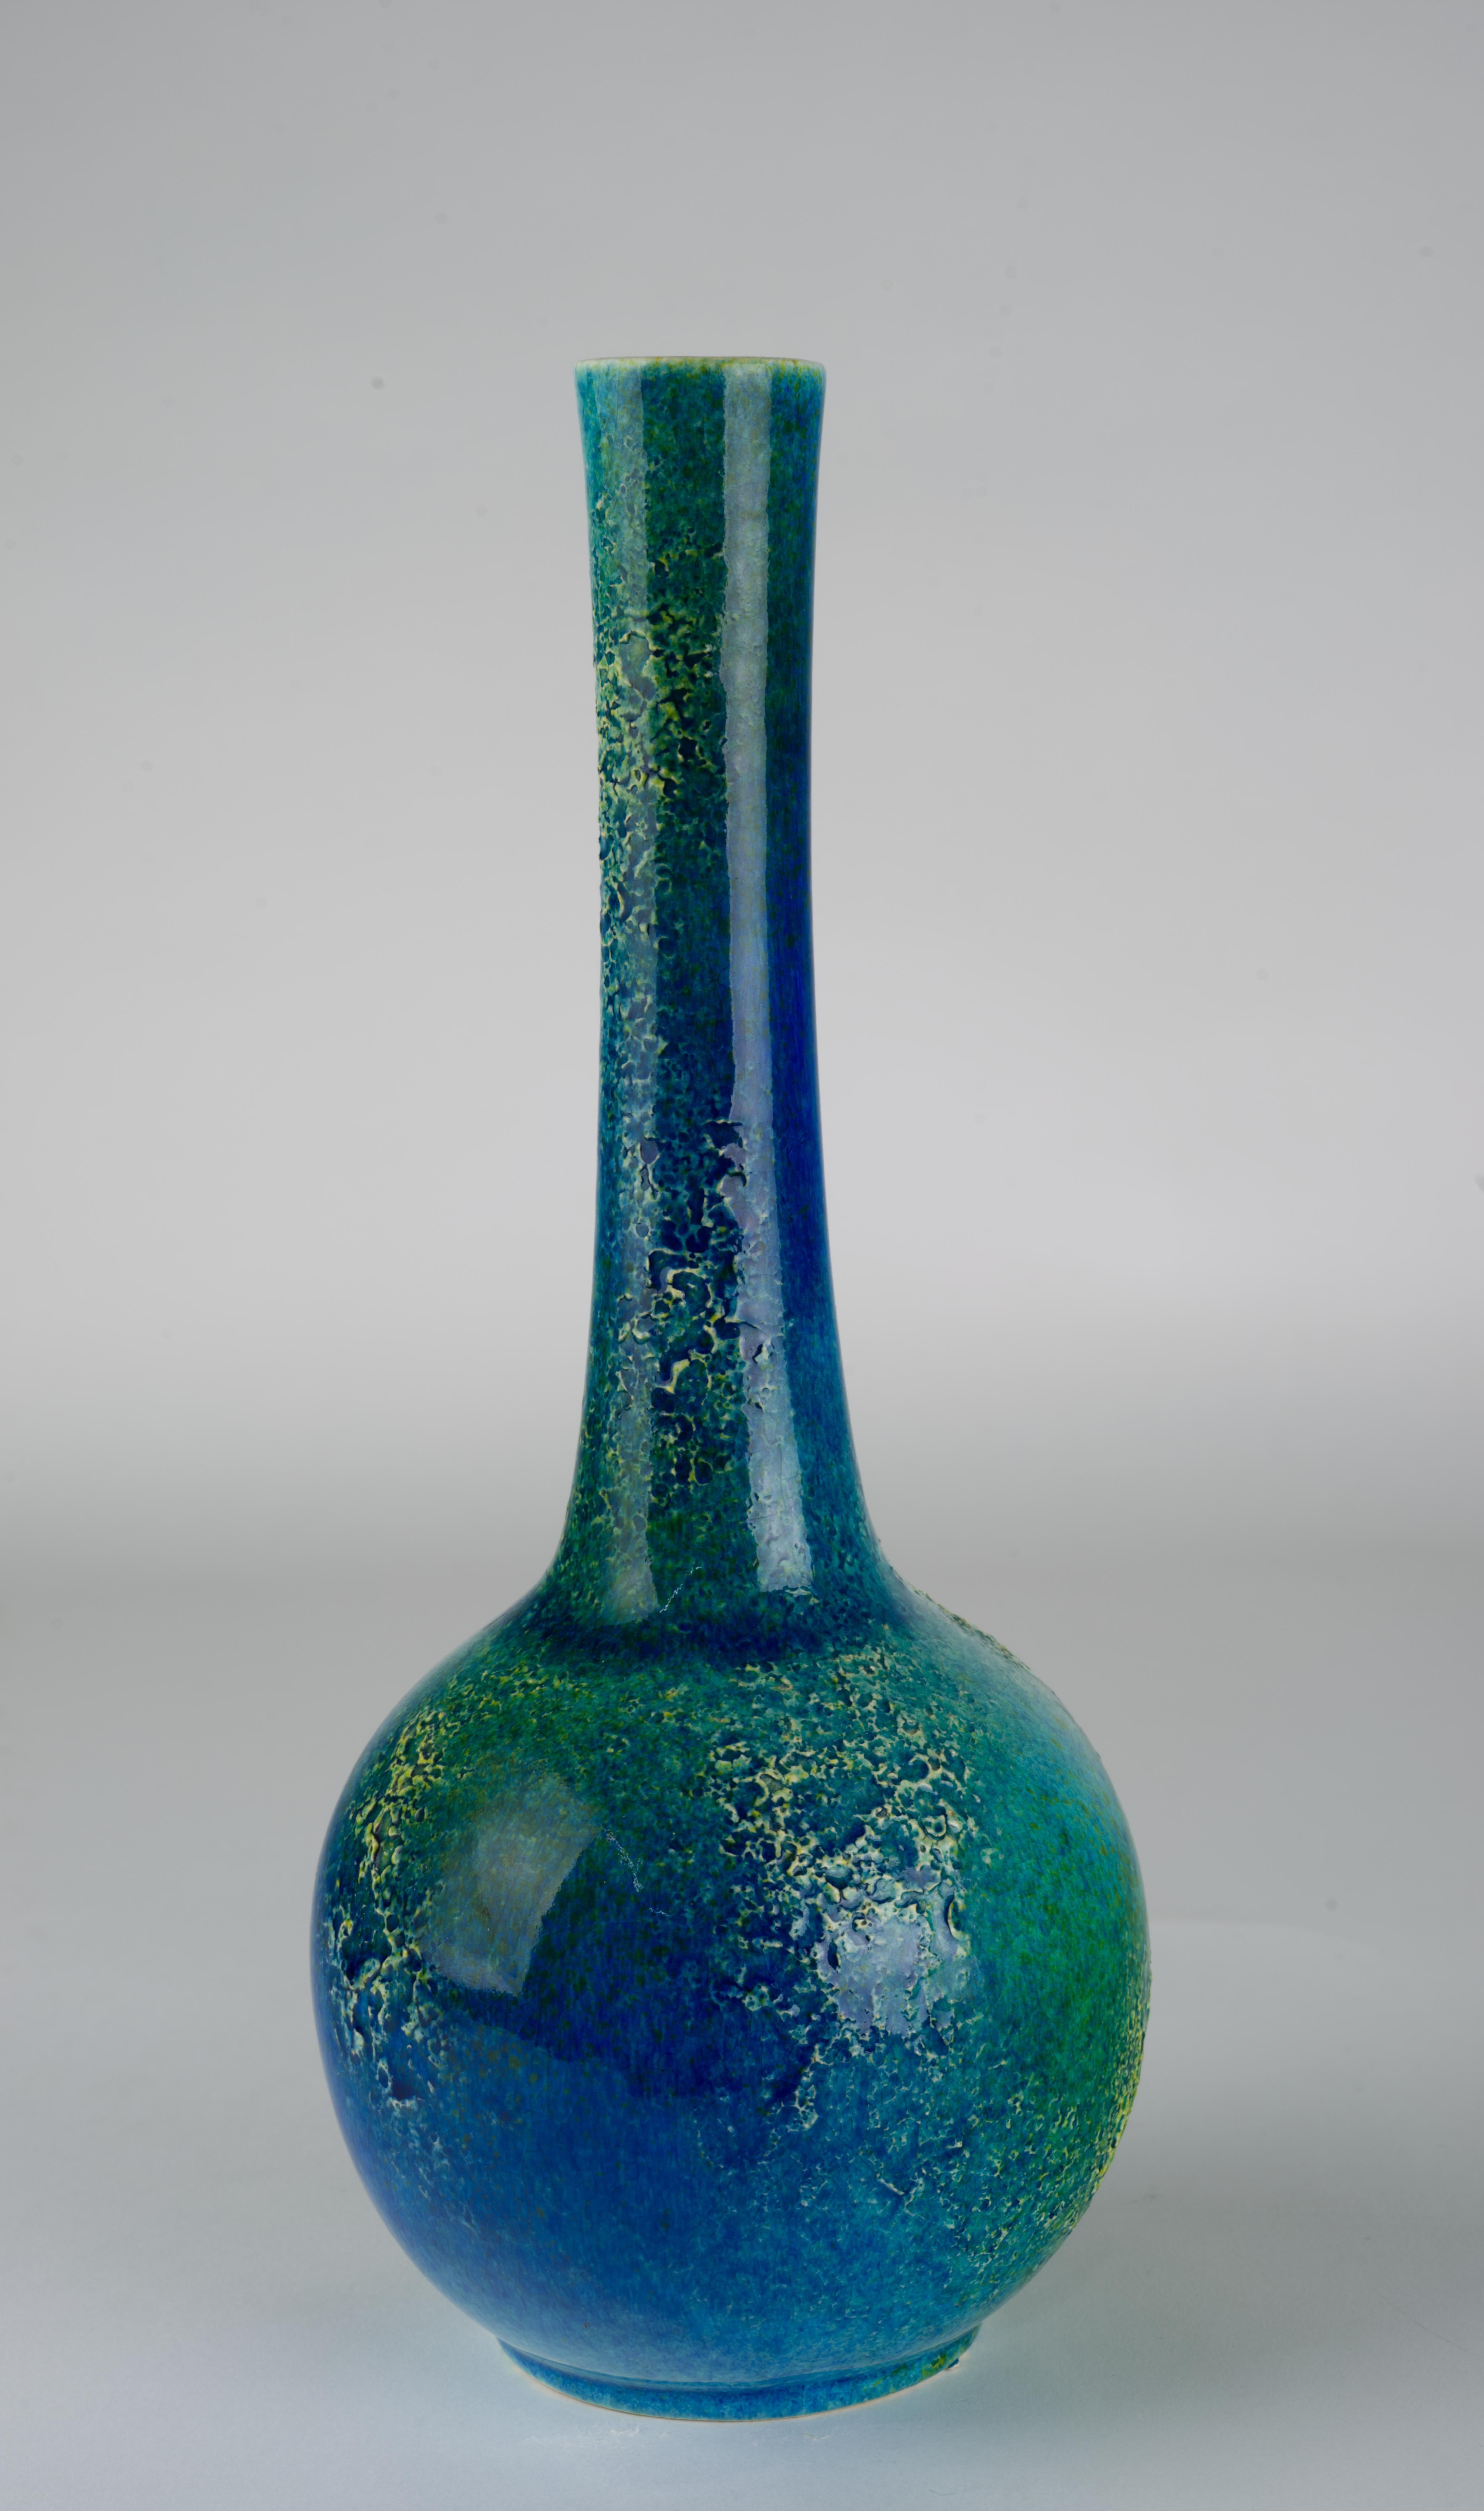  Ce vase vintage à long col a été fabriqué par Royal Haeger dans les années 1950. Il est décoré d'une glaçure craquelée bleu sarcelle brillante et complexe, avec des accents de glaçure lave plus clairs et très texturés, qui s'étendent en bandes sur